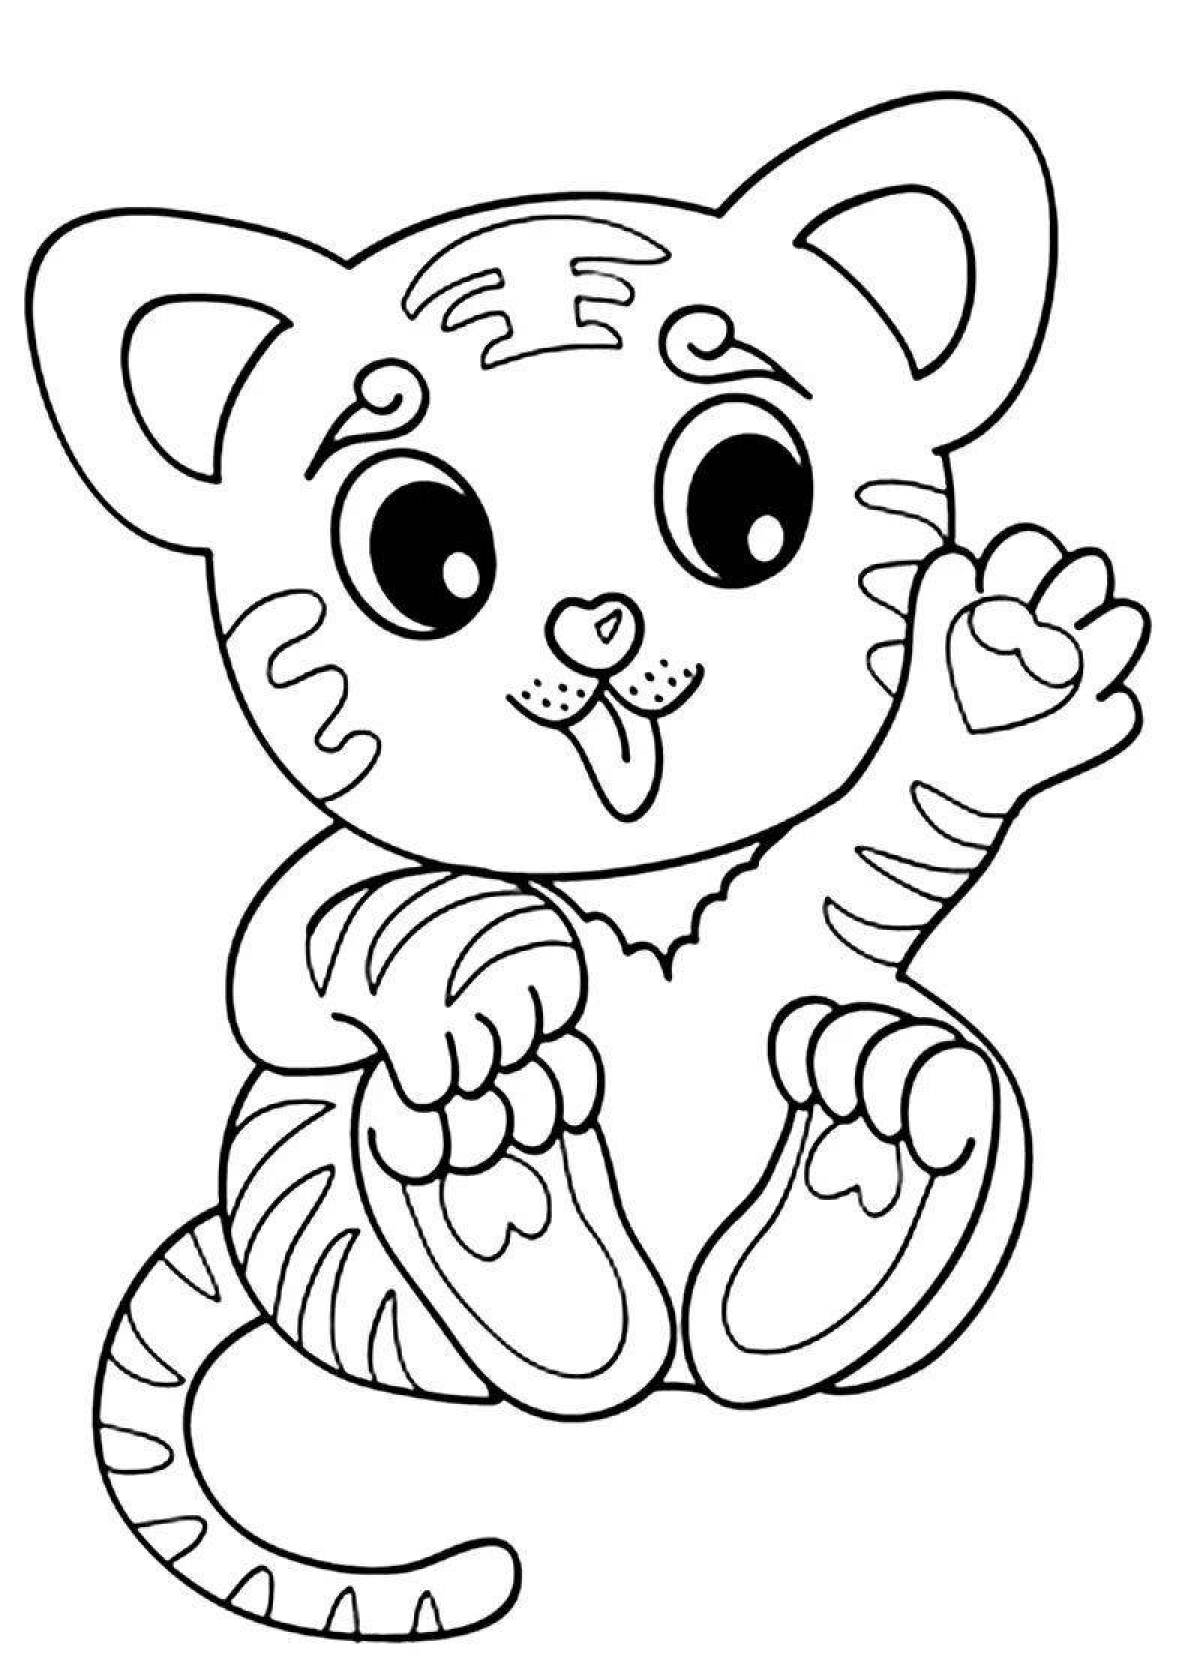 Tiger cub coloring page